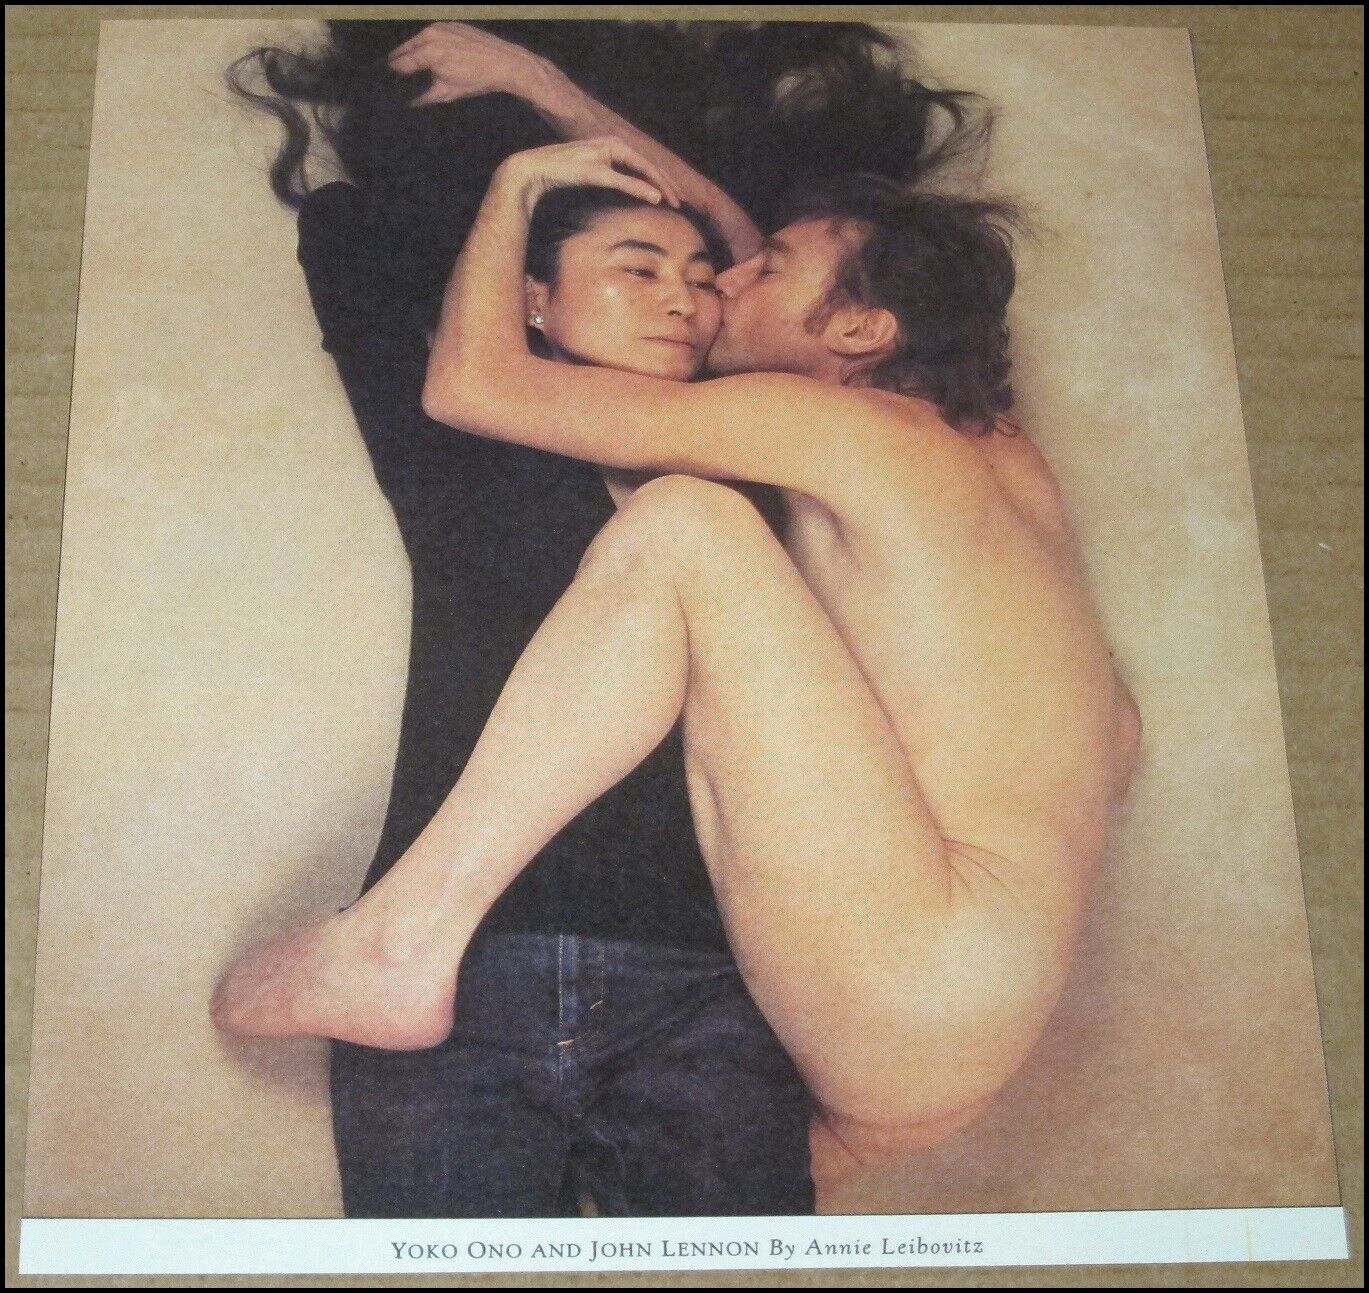 1989 Yoko Ono and John Lennon Annie Leibovitz Rolling Stone Photo Clipping 1980